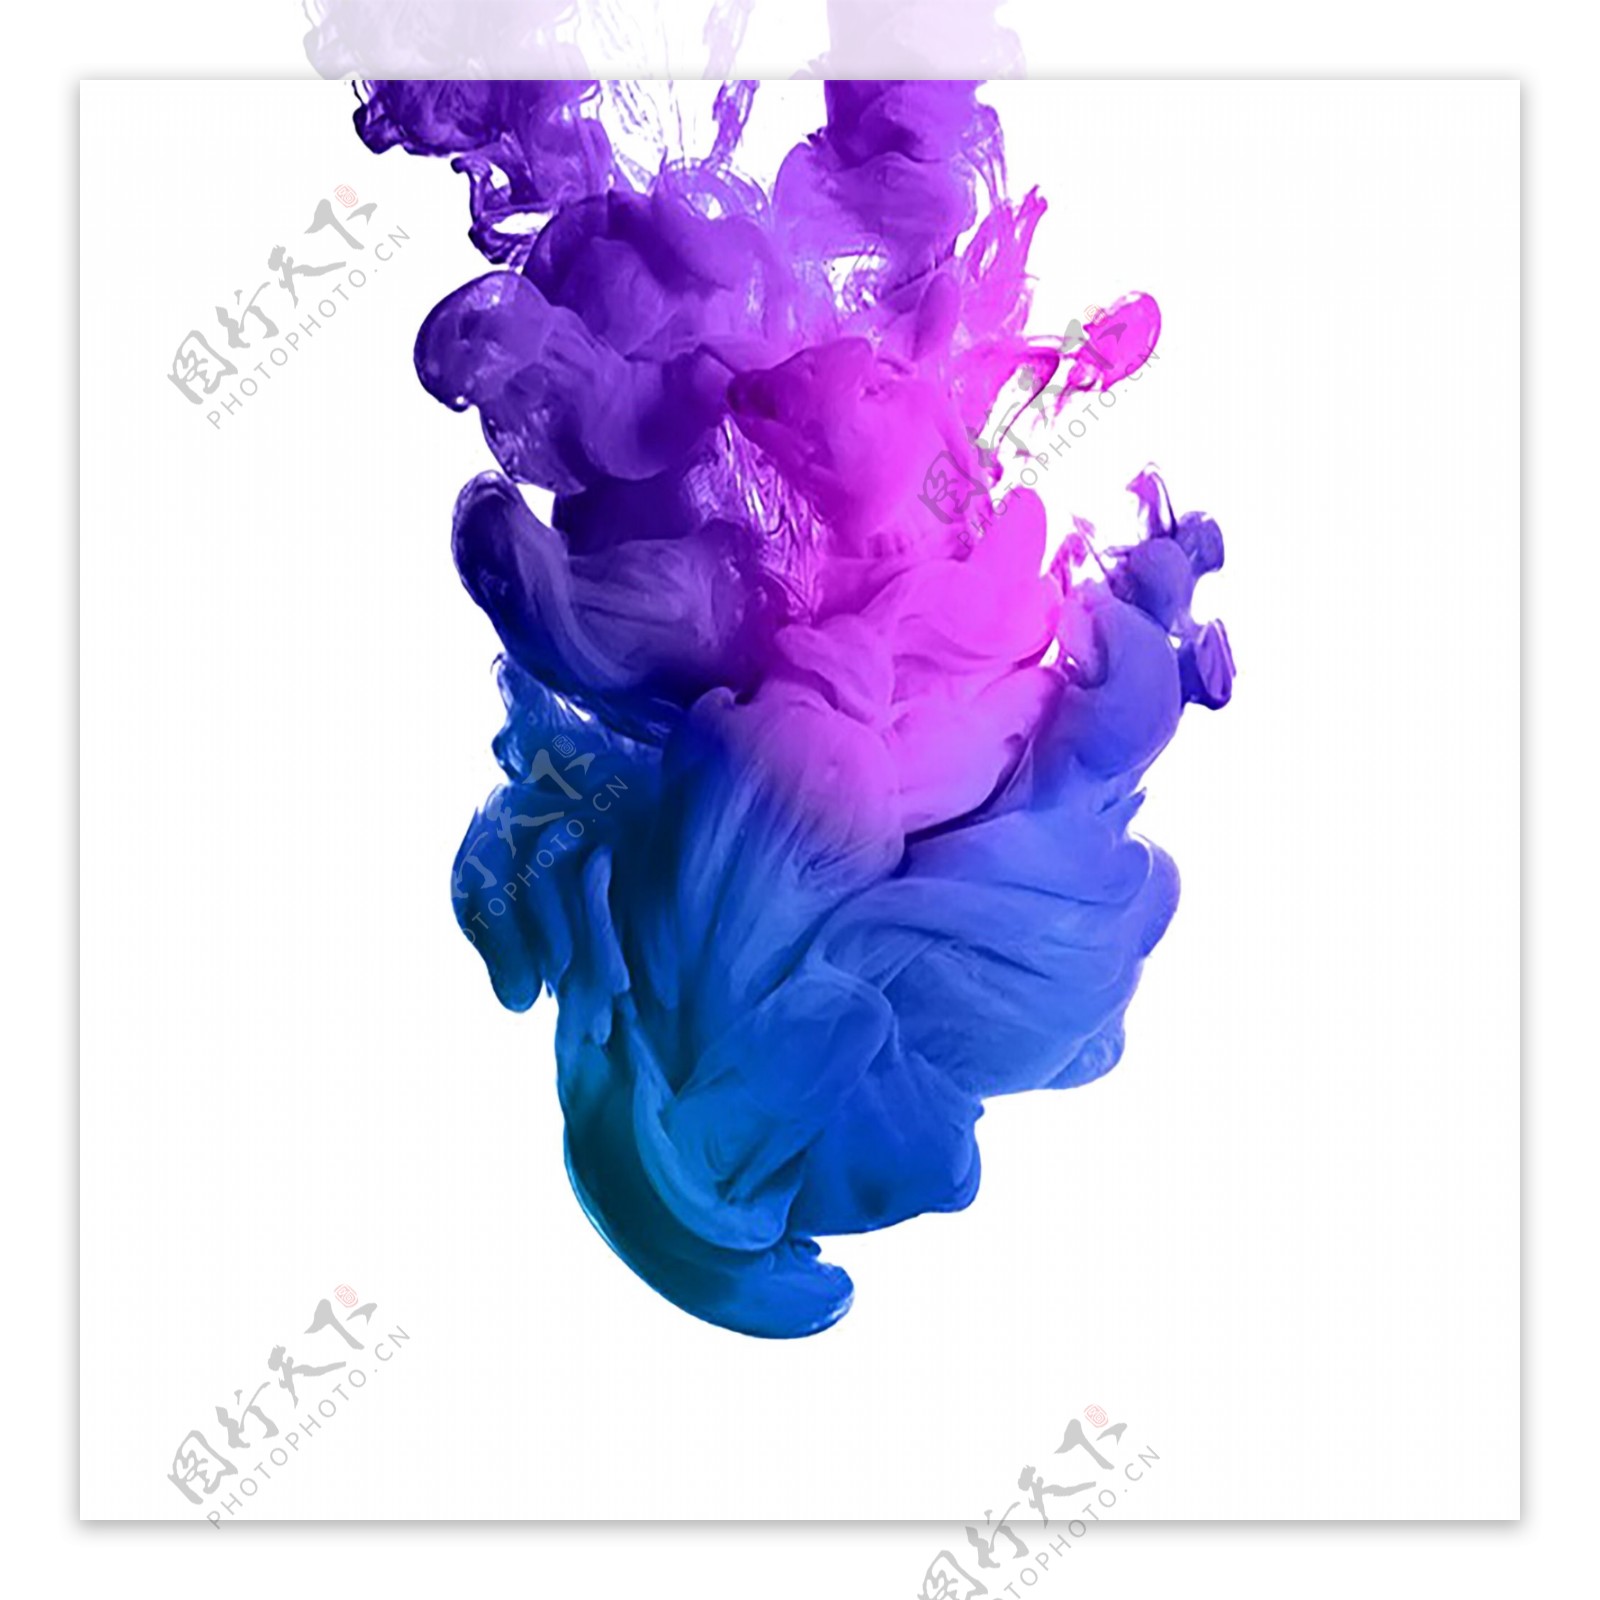 烟雾效果紫蓝色渐变流体元素商用原创水雾